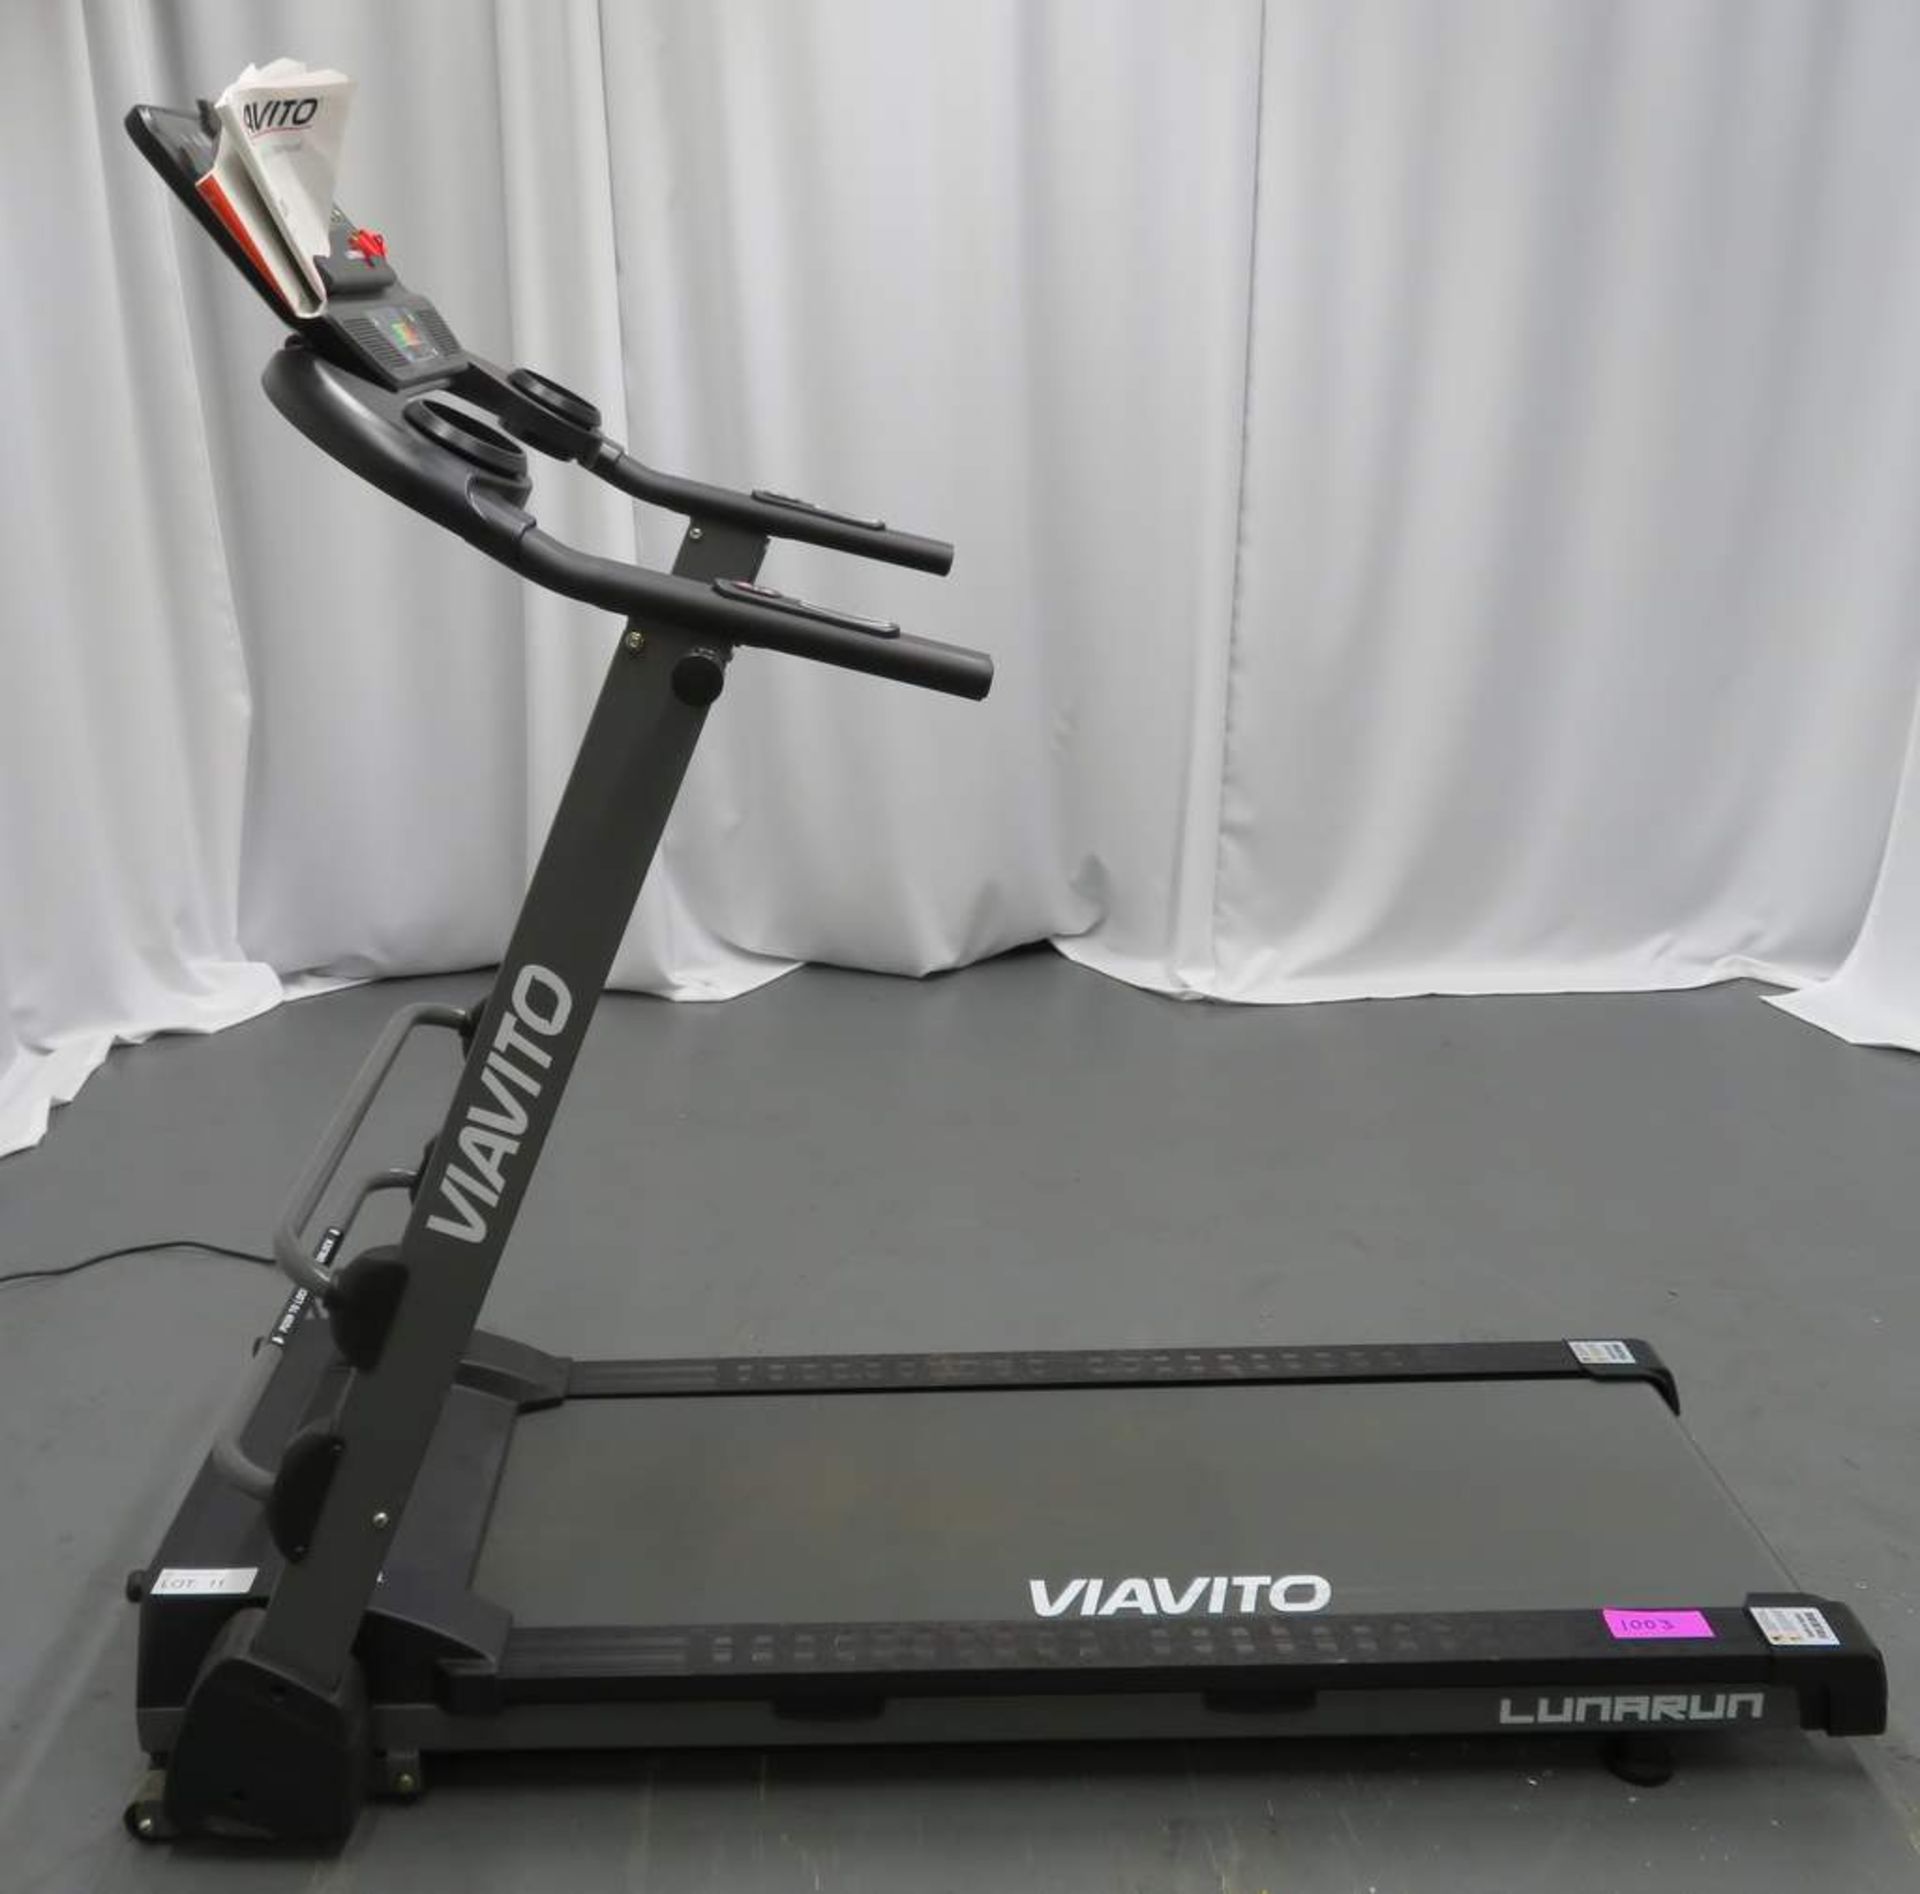 Viavito Luna Run Treadmill - Foldable.